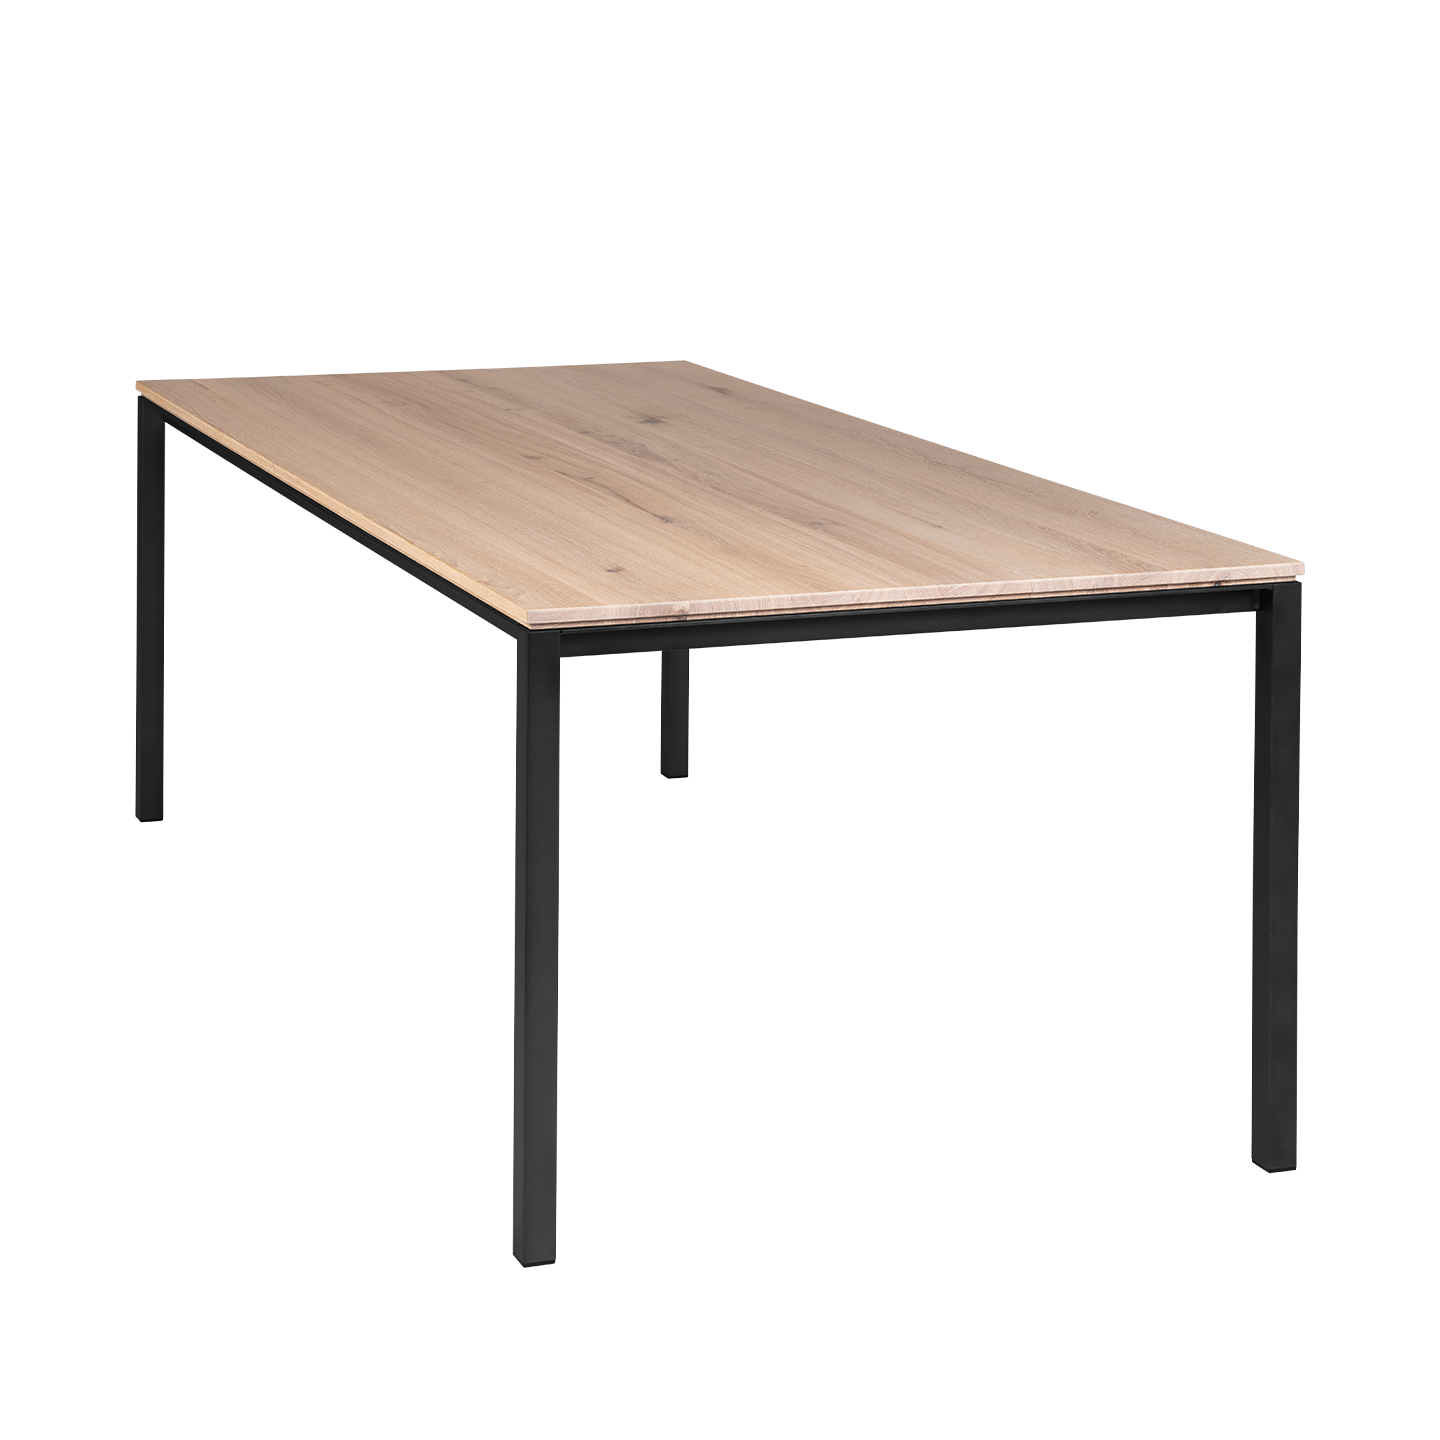 S 600 cpsdesign Tisch